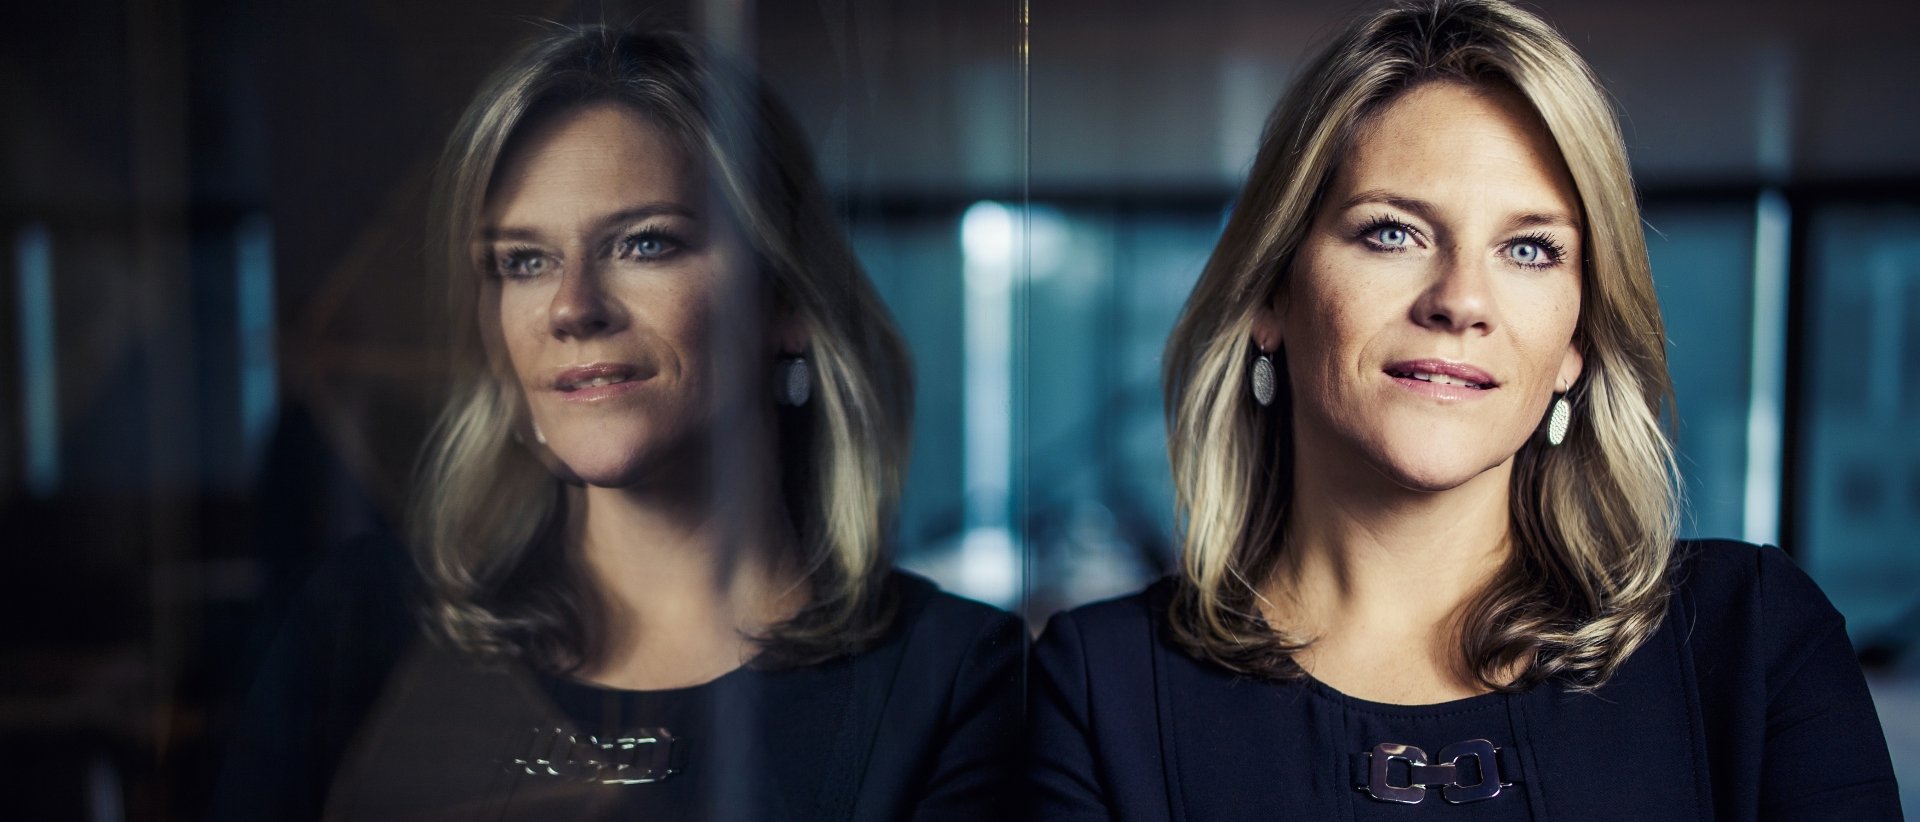 Karin van Baardwijk wird Chief Executive Officer von Robeco